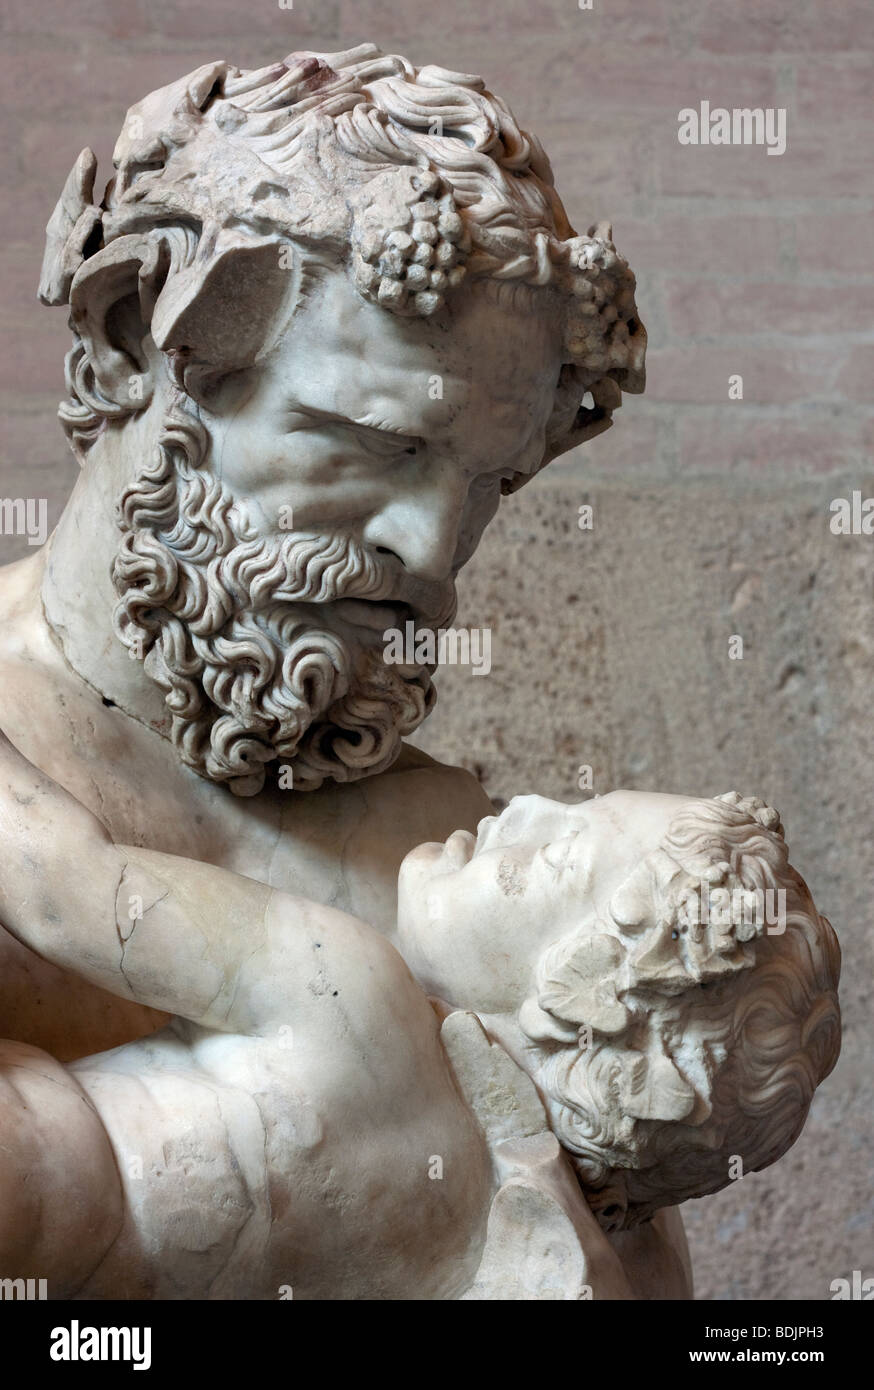 Detail des Satyrs wiegt das Kind Dionysos in der Münchner Glyptothek. Siehe Beschreibung für mehr Info. Stockfoto